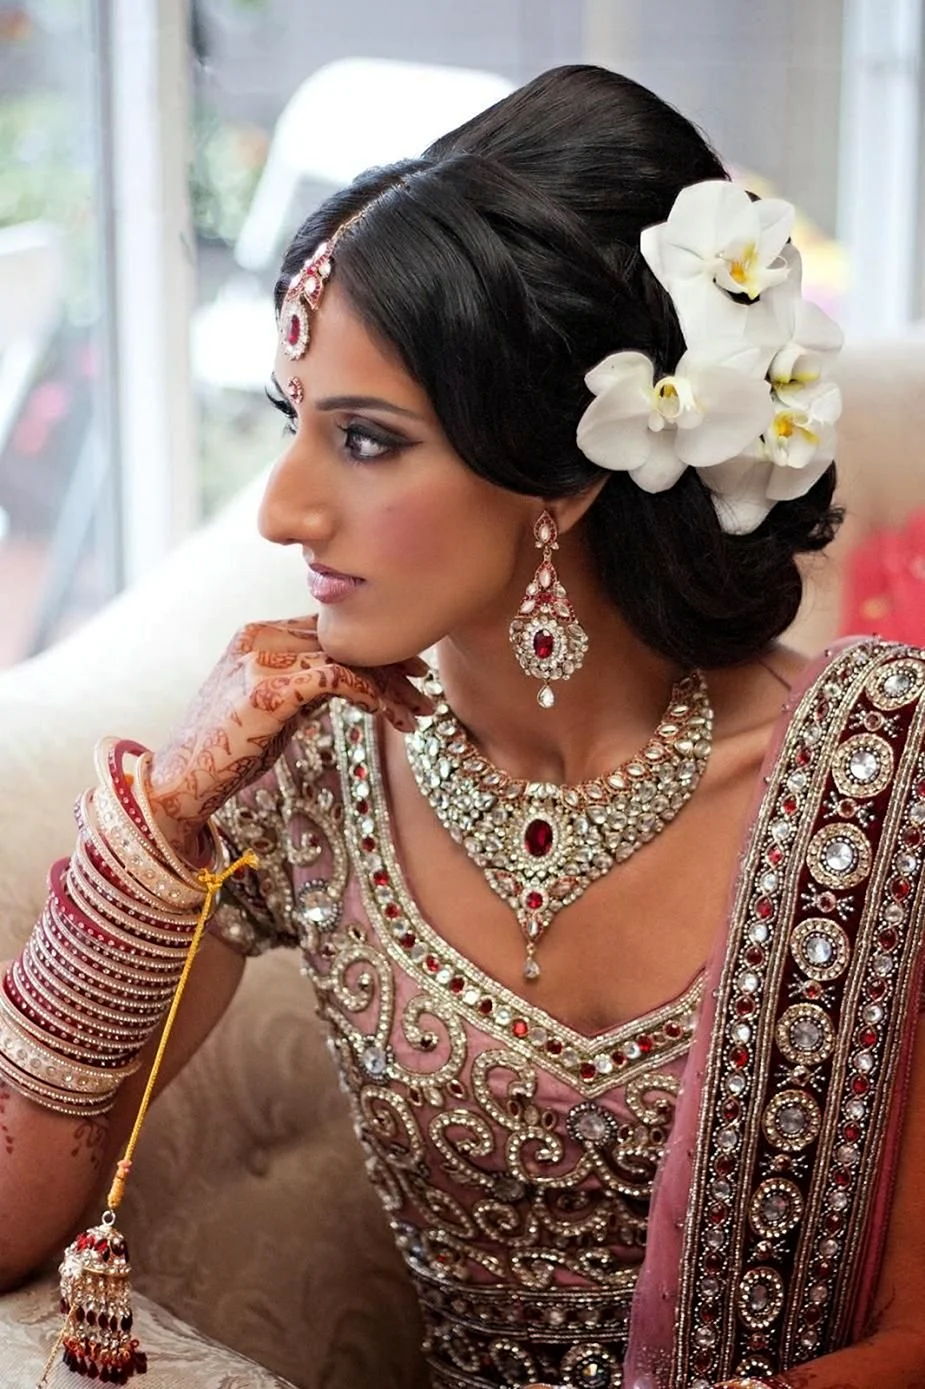 Причоска индийских невест